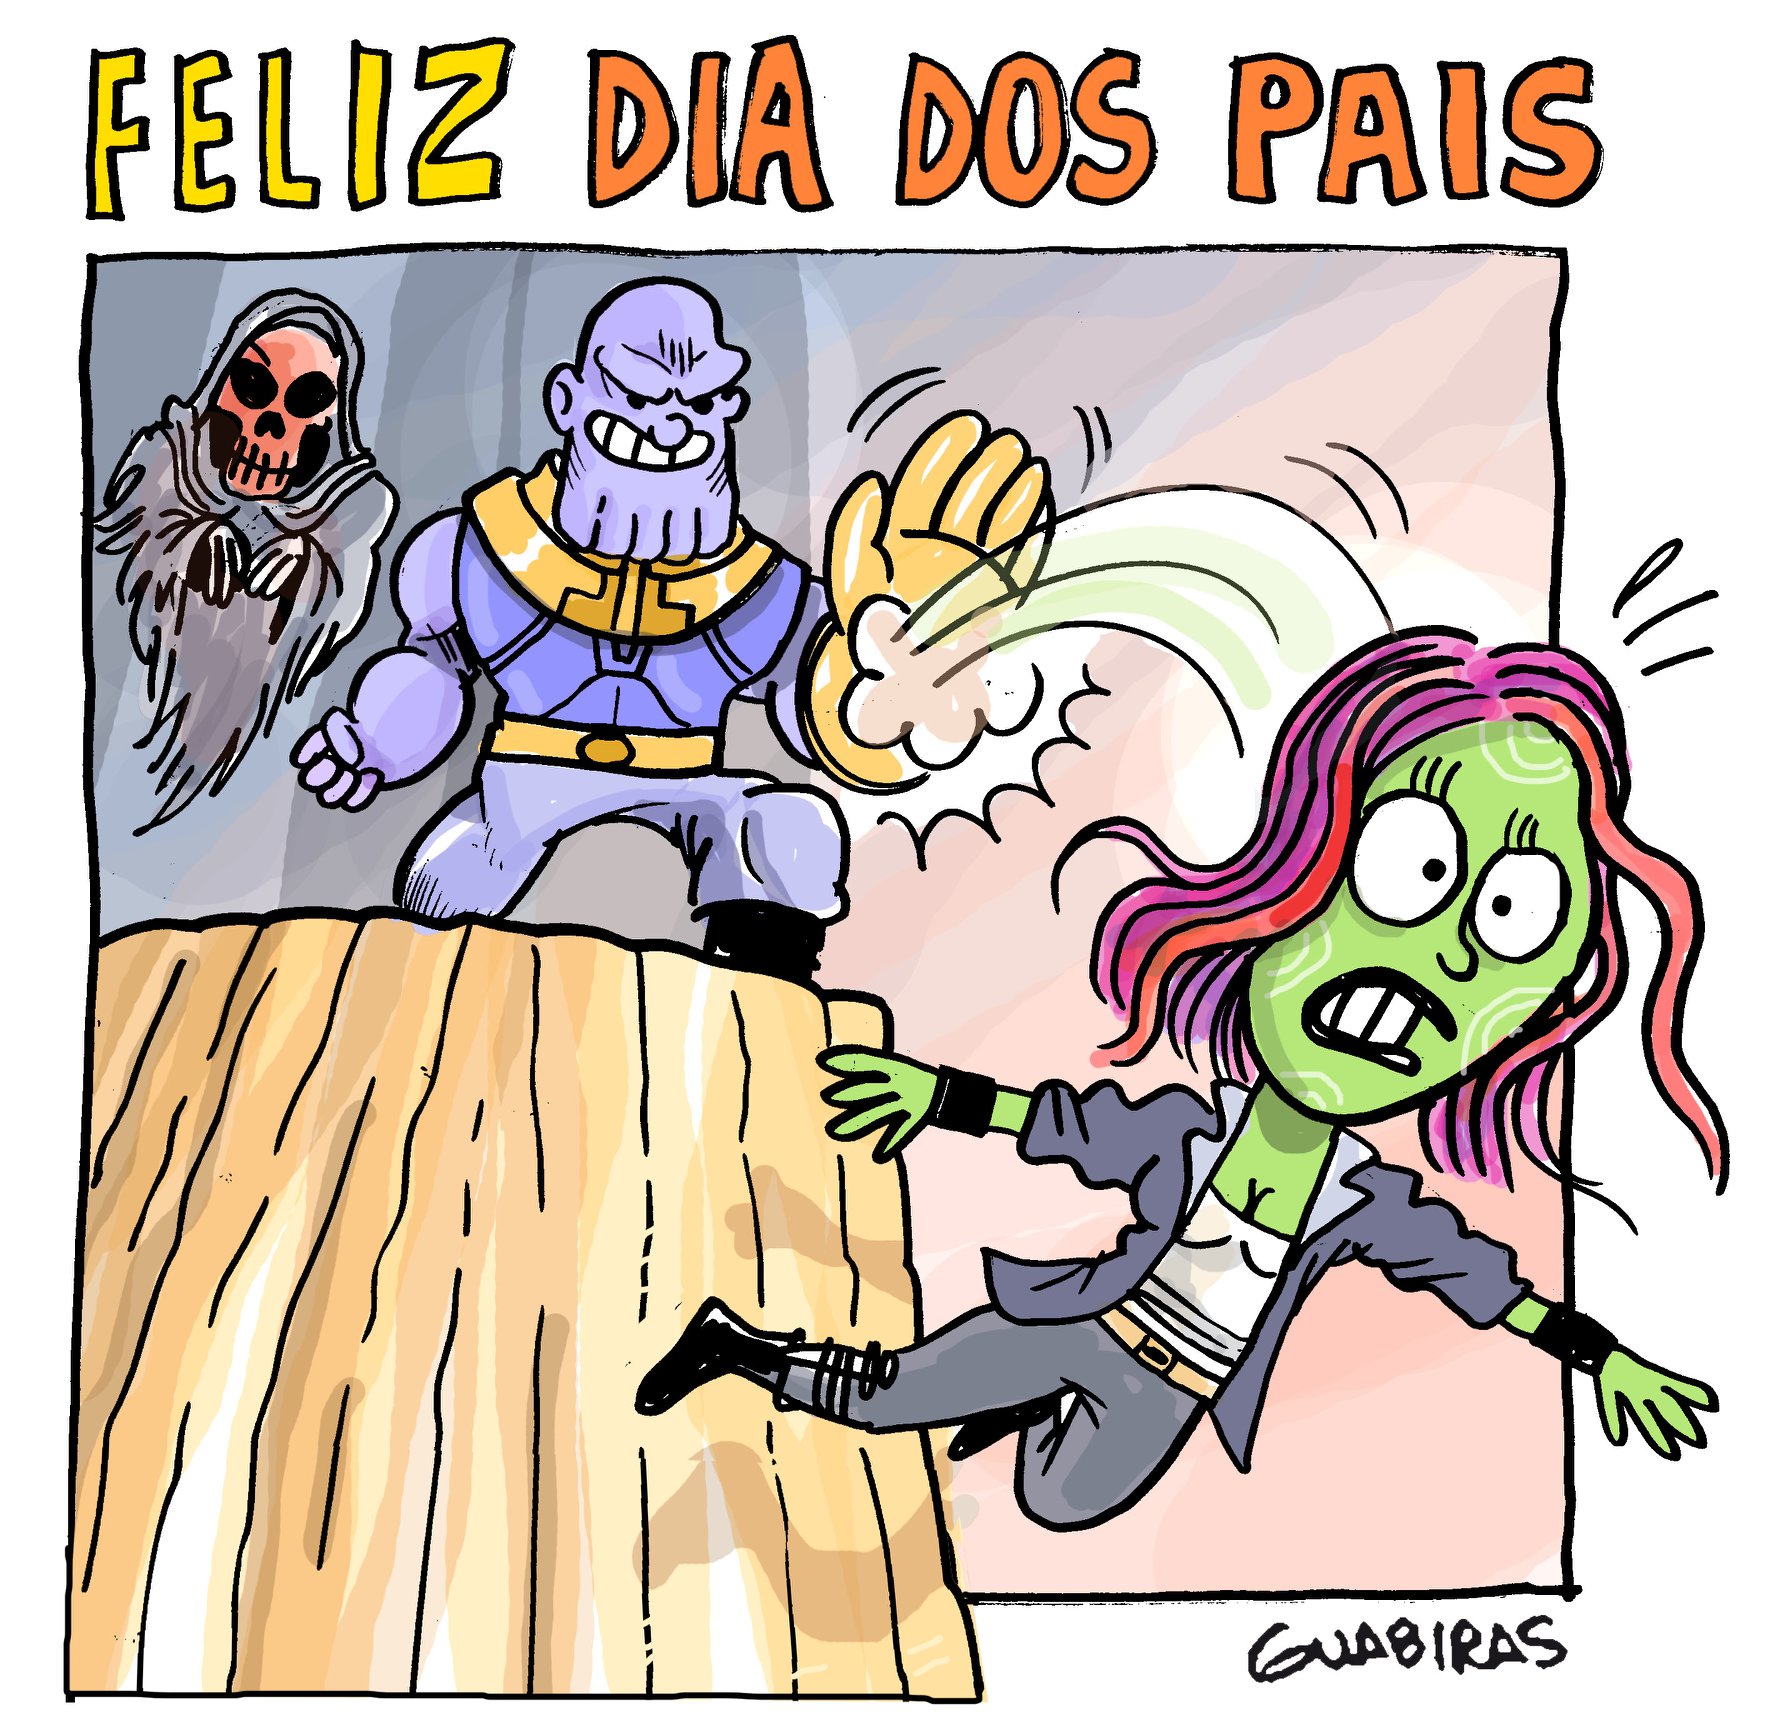 Dia dos Pais do Thanos - Gamora - Guerra Infinita - Carlos Henrique Guabiras - FAROFEIROS COM BR